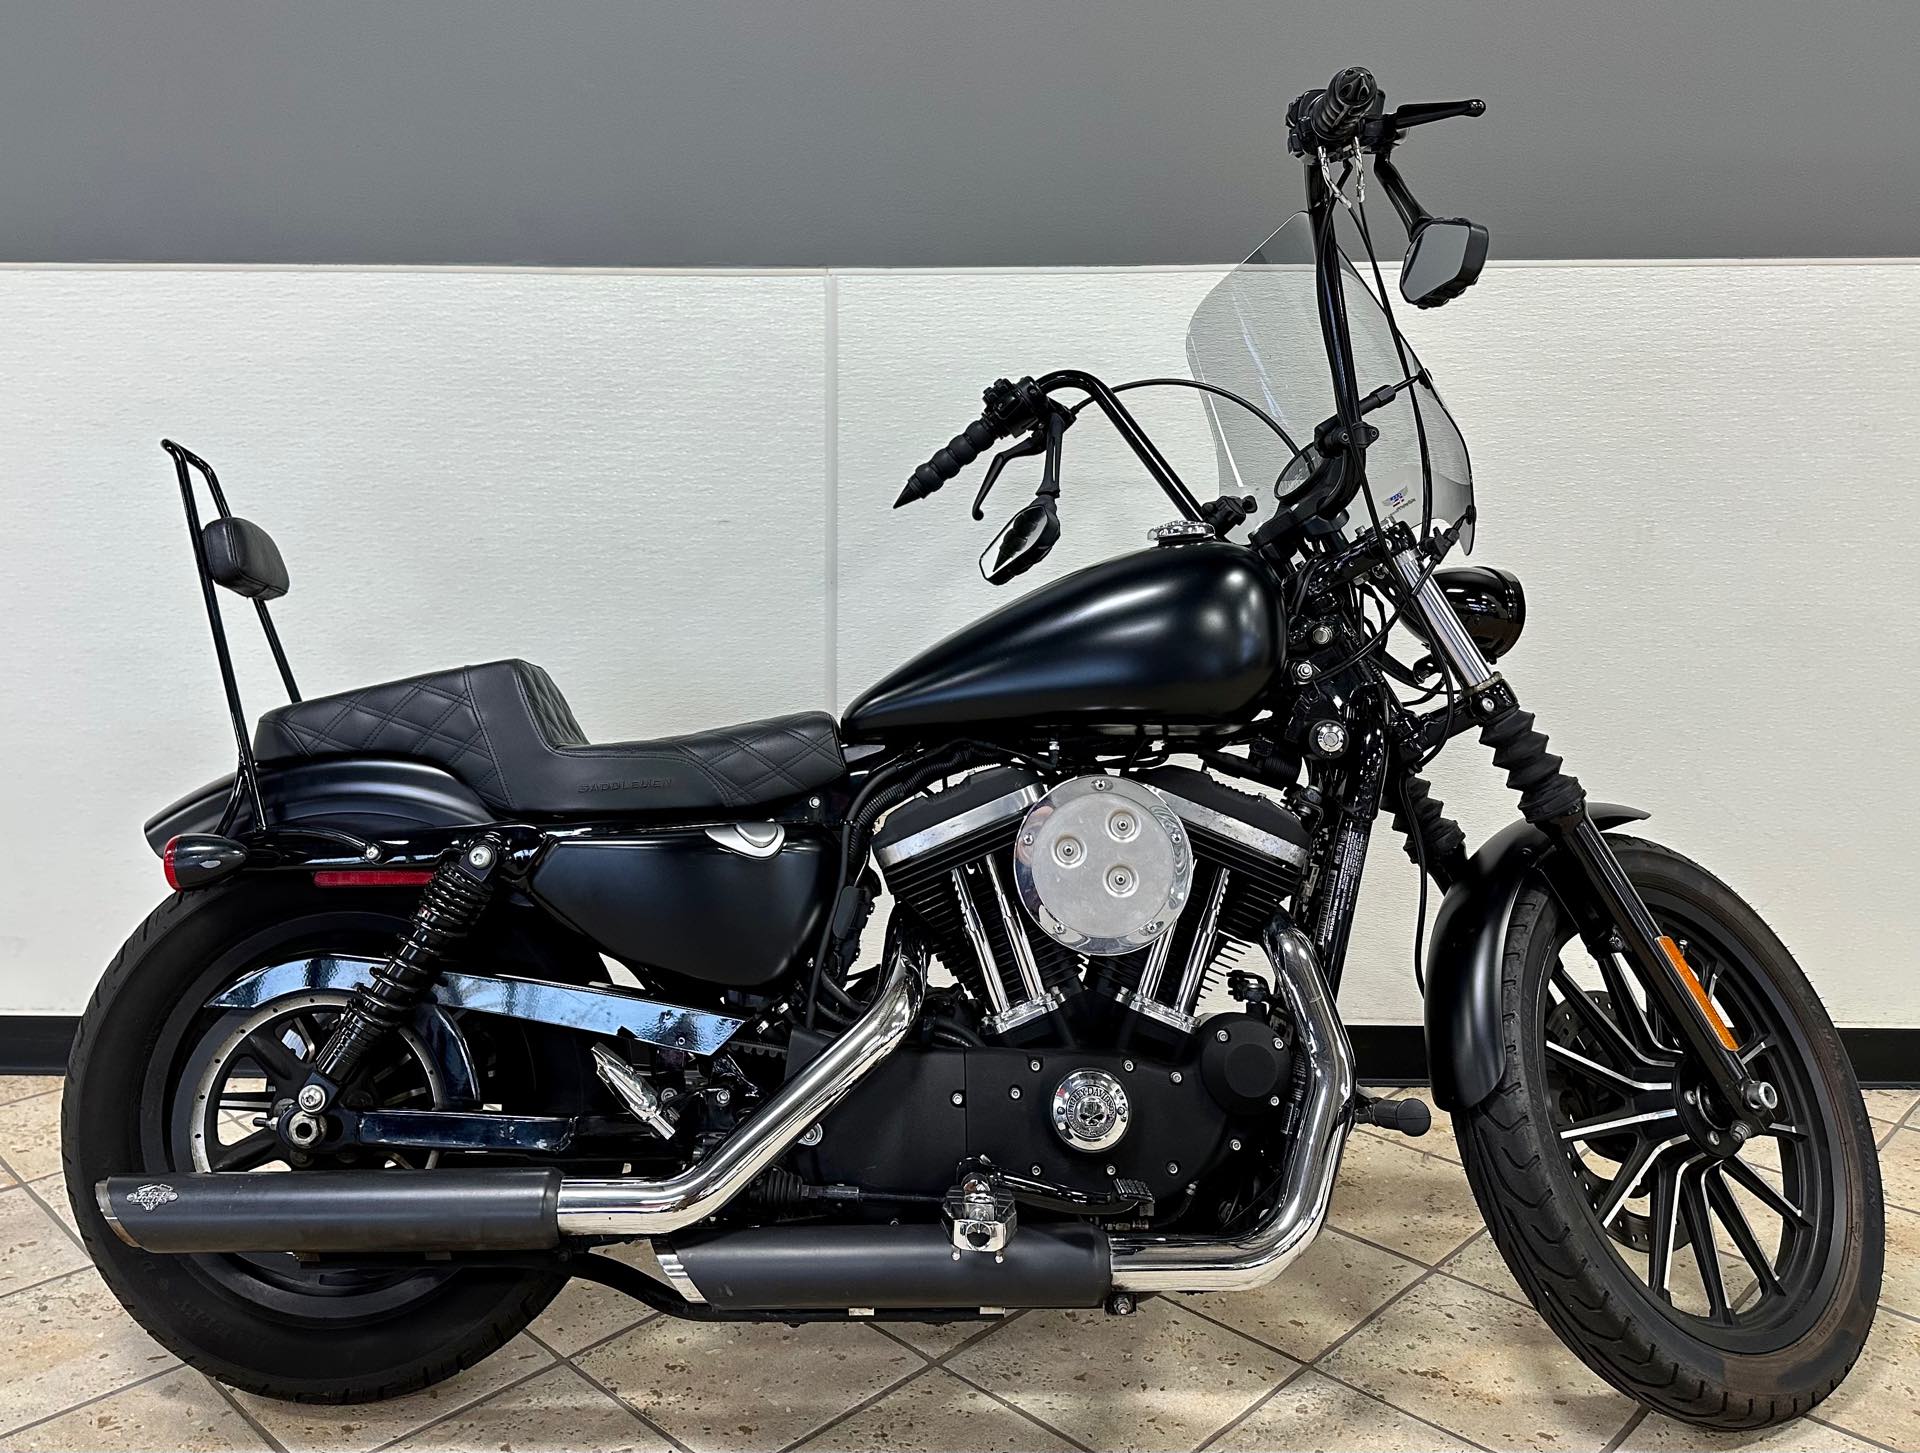 2015 Harley-Davidson Sportster Iron 883 at Destination Harley-Davidson®, Tacoma, WA 98424